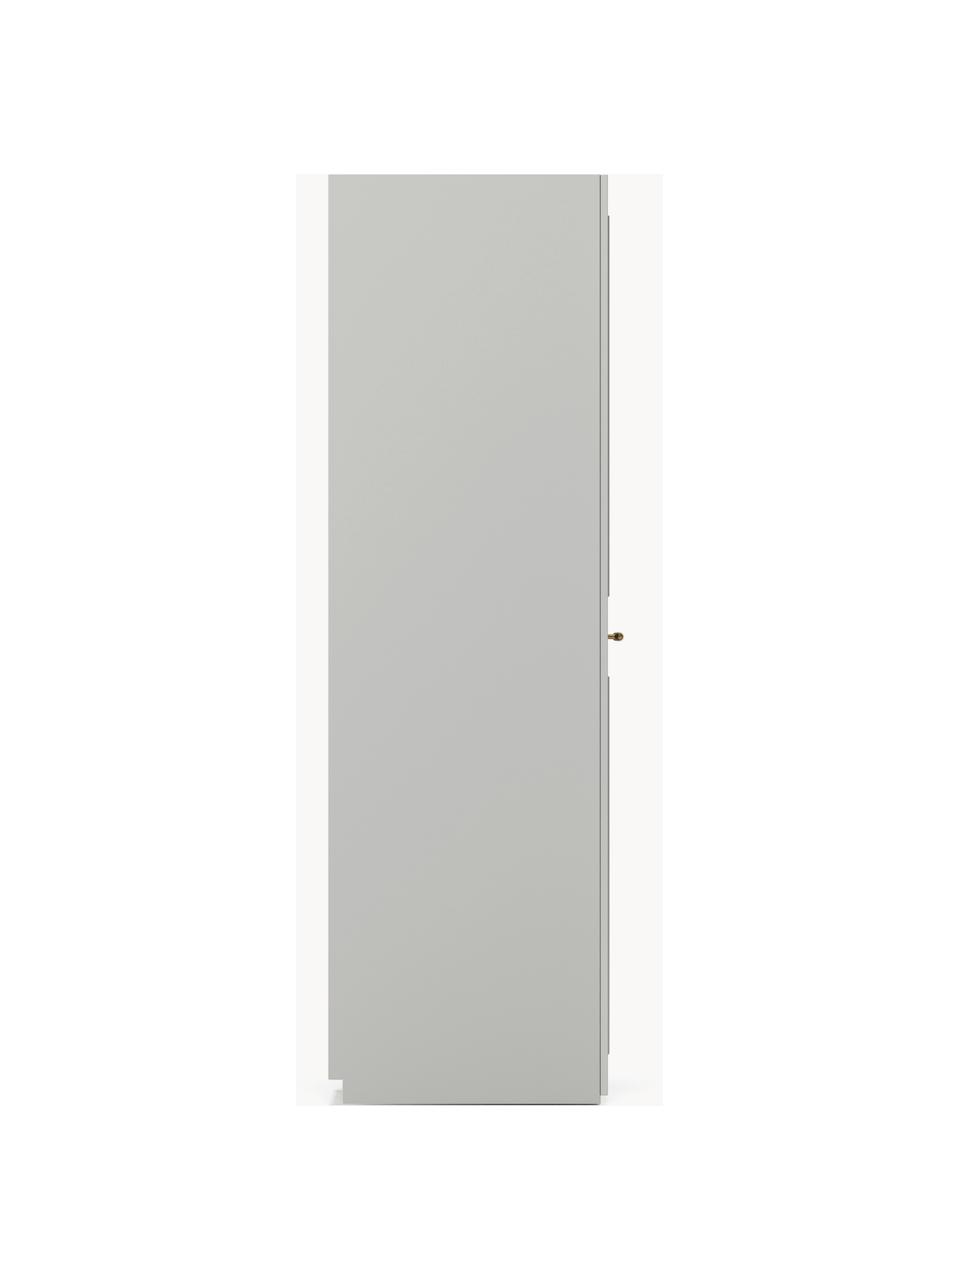 Szafa modułowa Charlotte, 5-drzwiowa, różne warianty, Korpus: płyta wiórowa pokryta mel, Szary, S 250 x W 200 cm, Basic